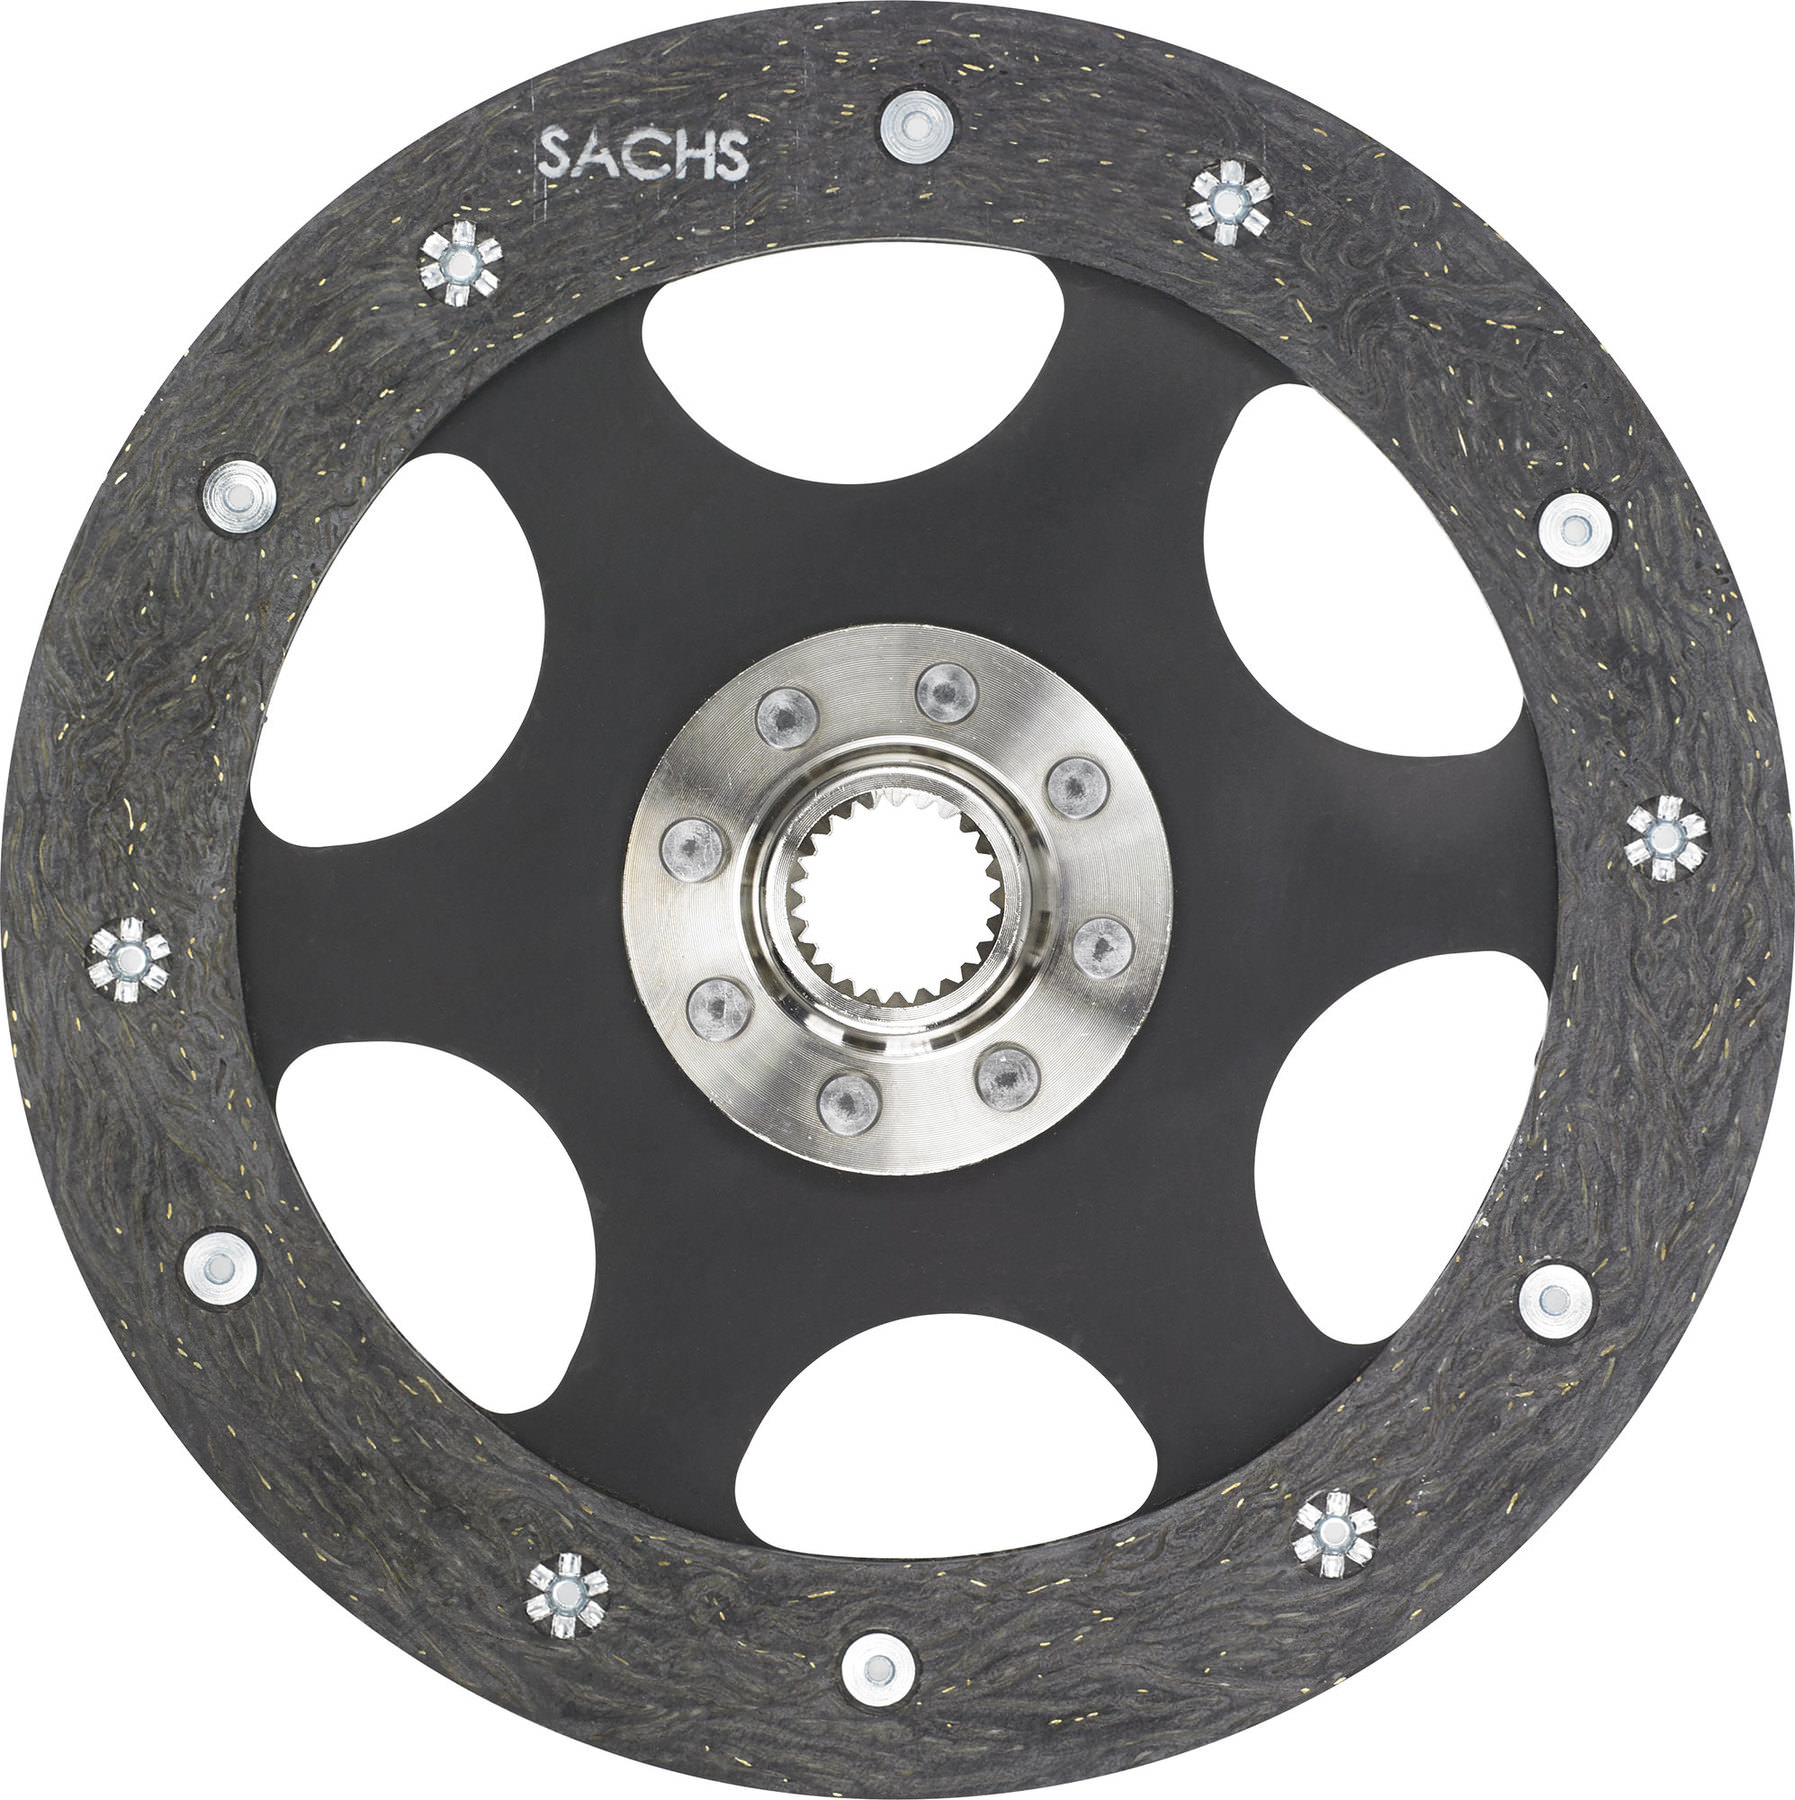 Sachs 1864 355 102 Clutch Disc 